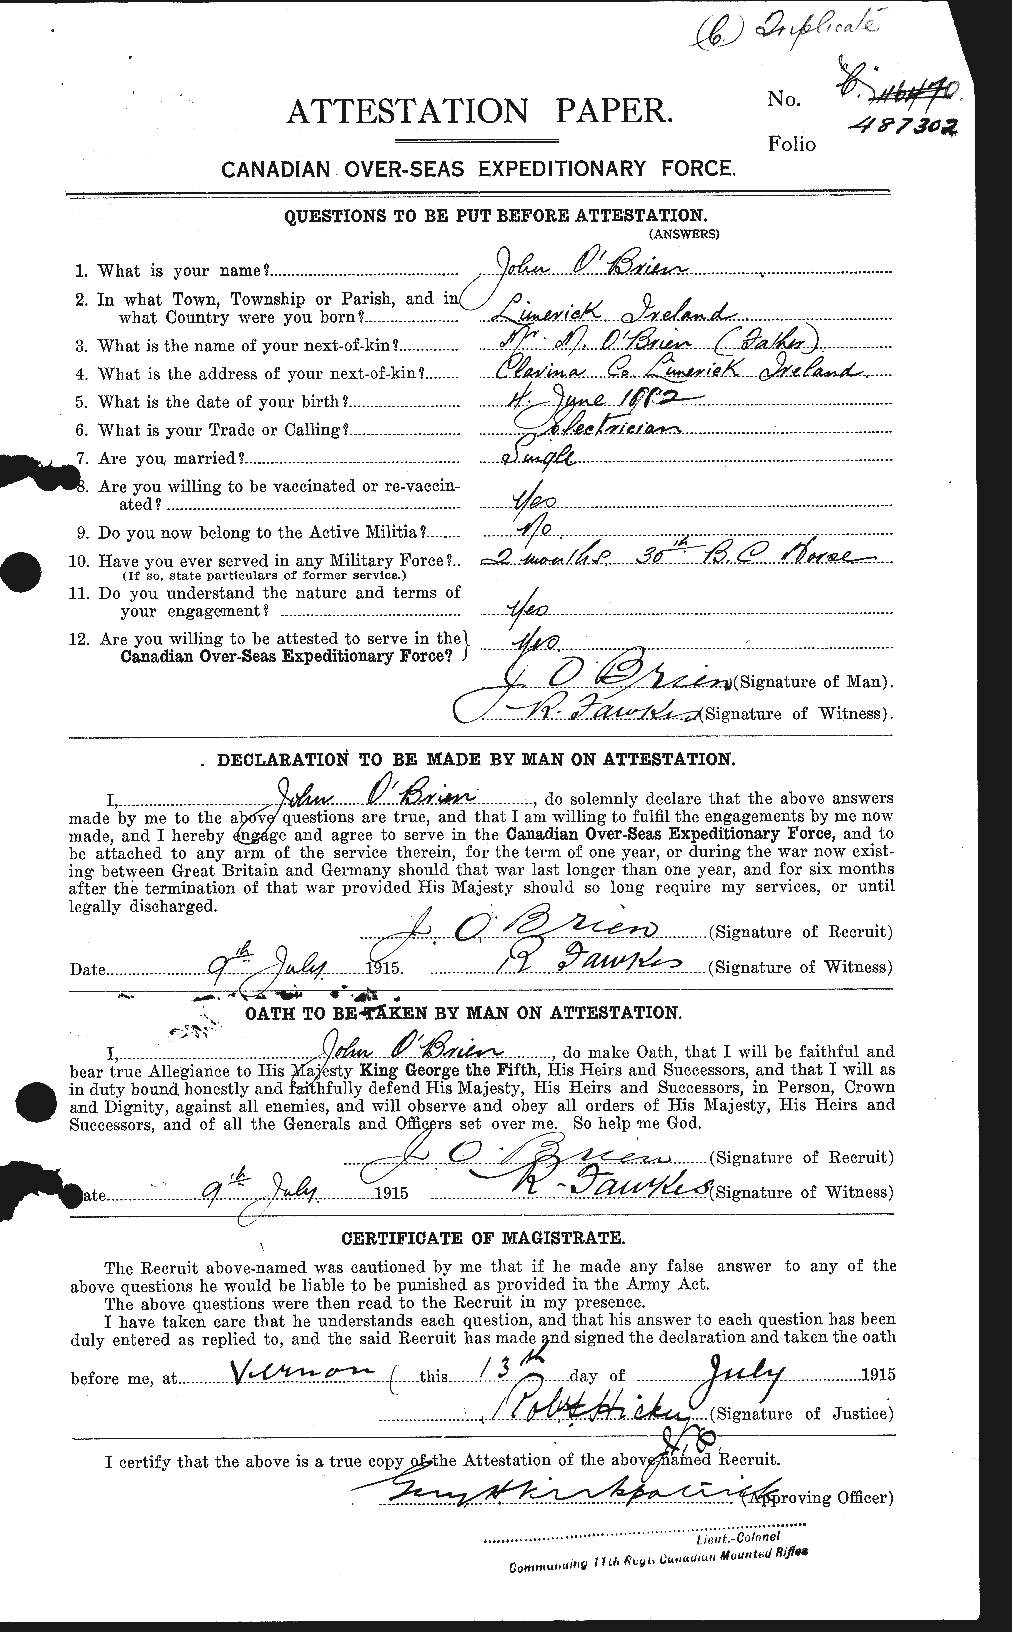 Dossiers du Personnel de la Première Guerre mondiale - CEC 554664a